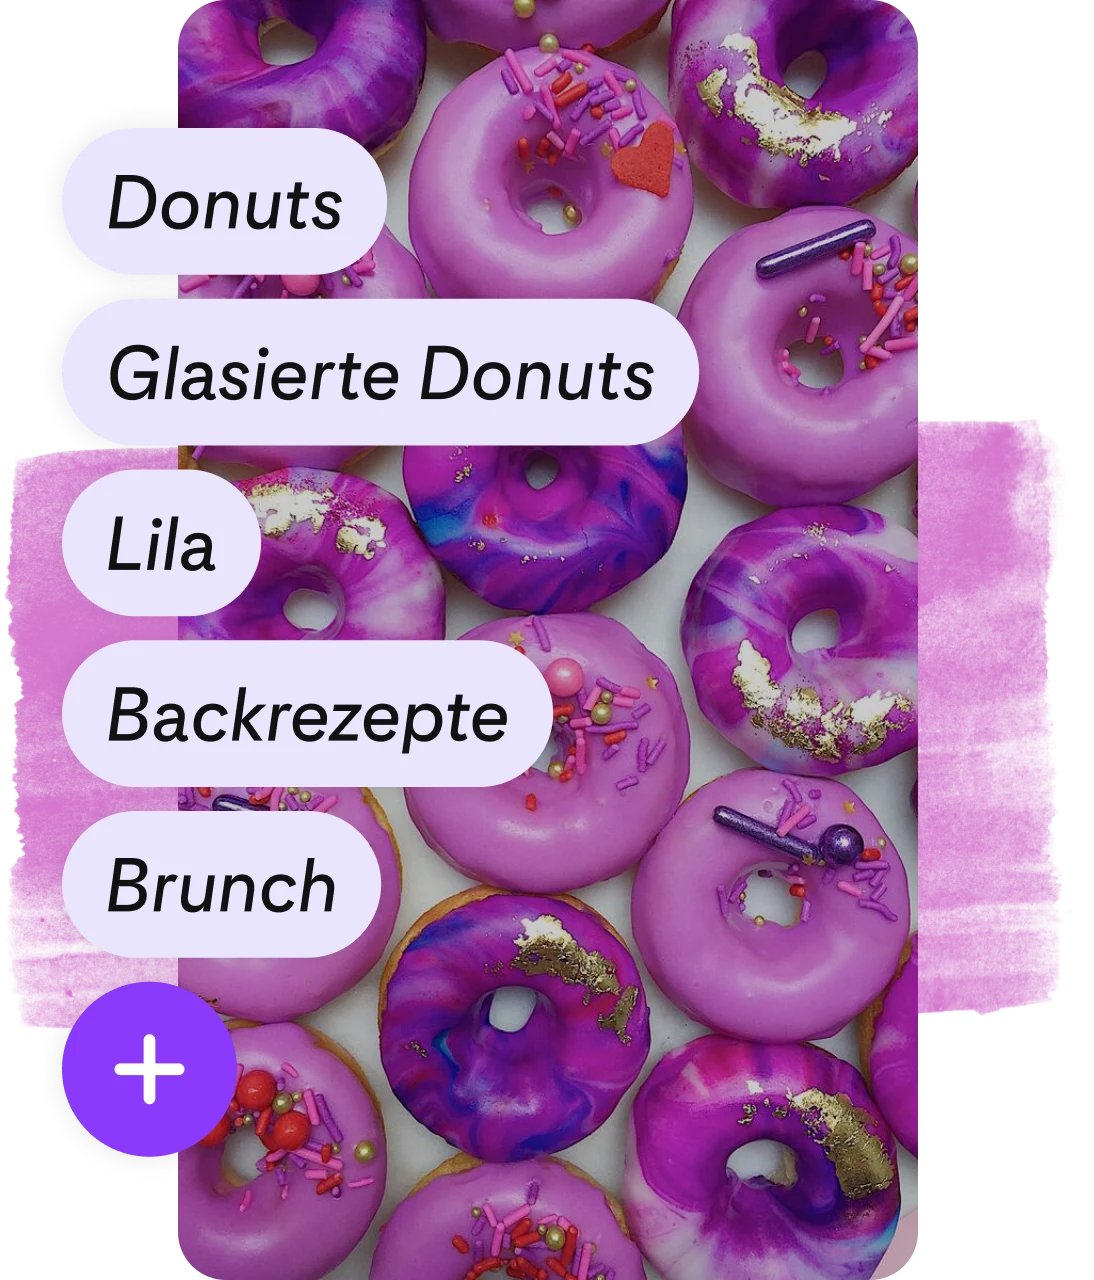 Liste mit Tags und lila Button zum Hinzufügen auf Pin mit lila Donuts